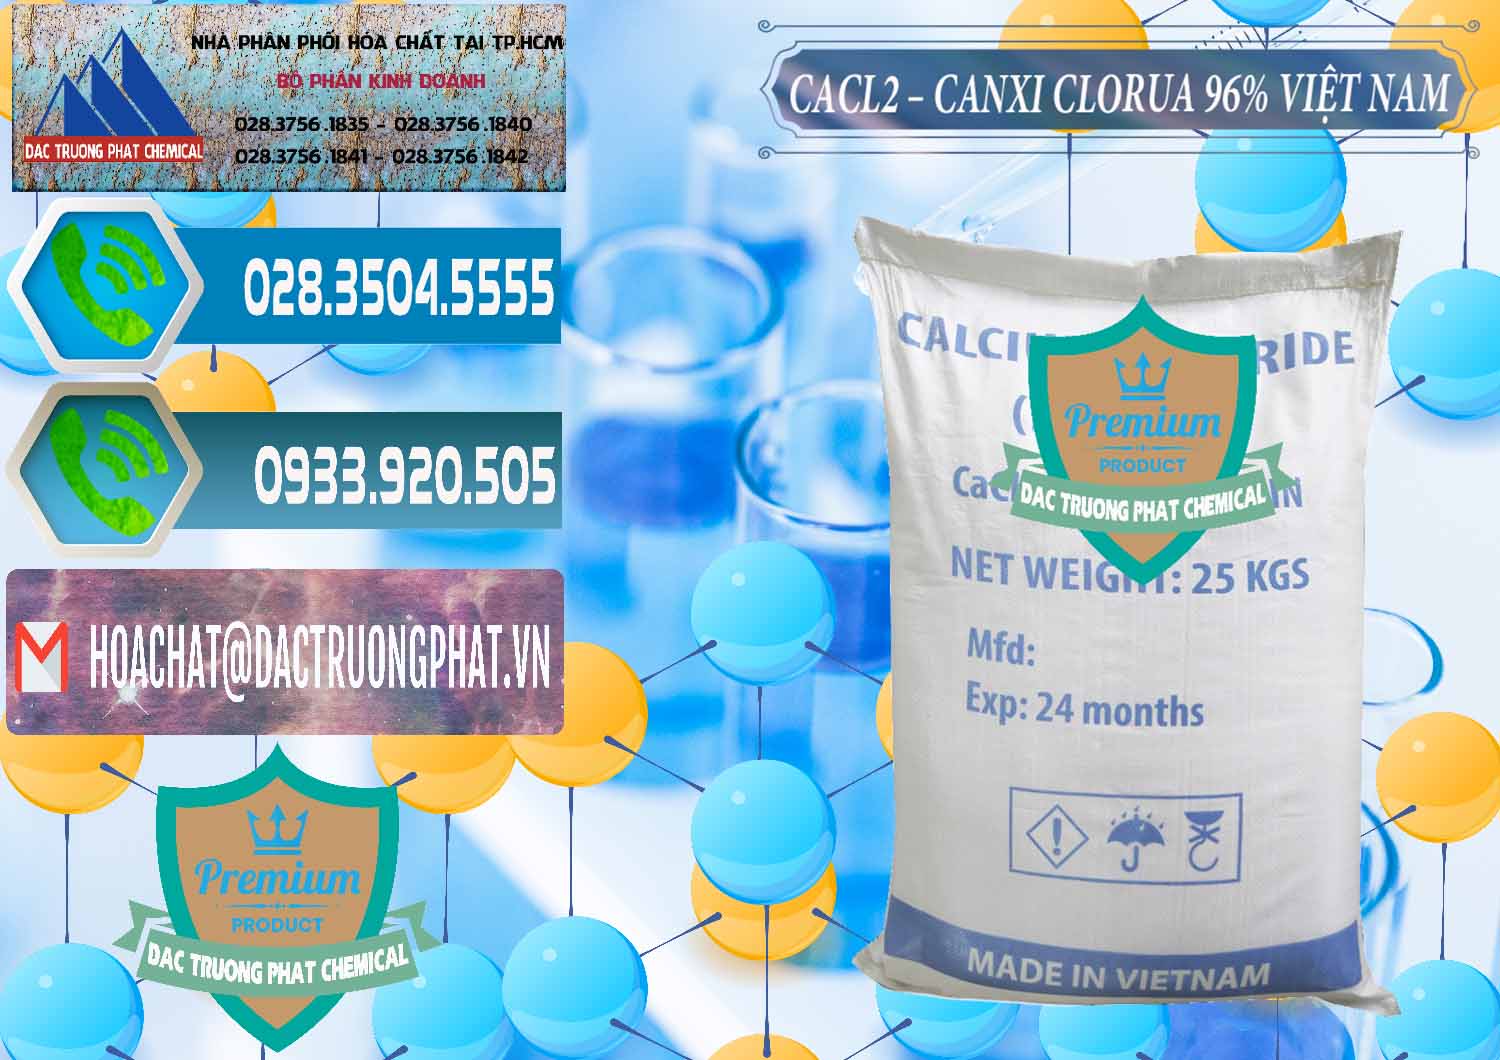 Cty chuyên phân phối và cung ứng CaCl2 – Canxi Clorua 96% Việt Nam - 0236 - Phân phối - cung cấp hóa chất tại TP.HCM - congtyhoachat.net